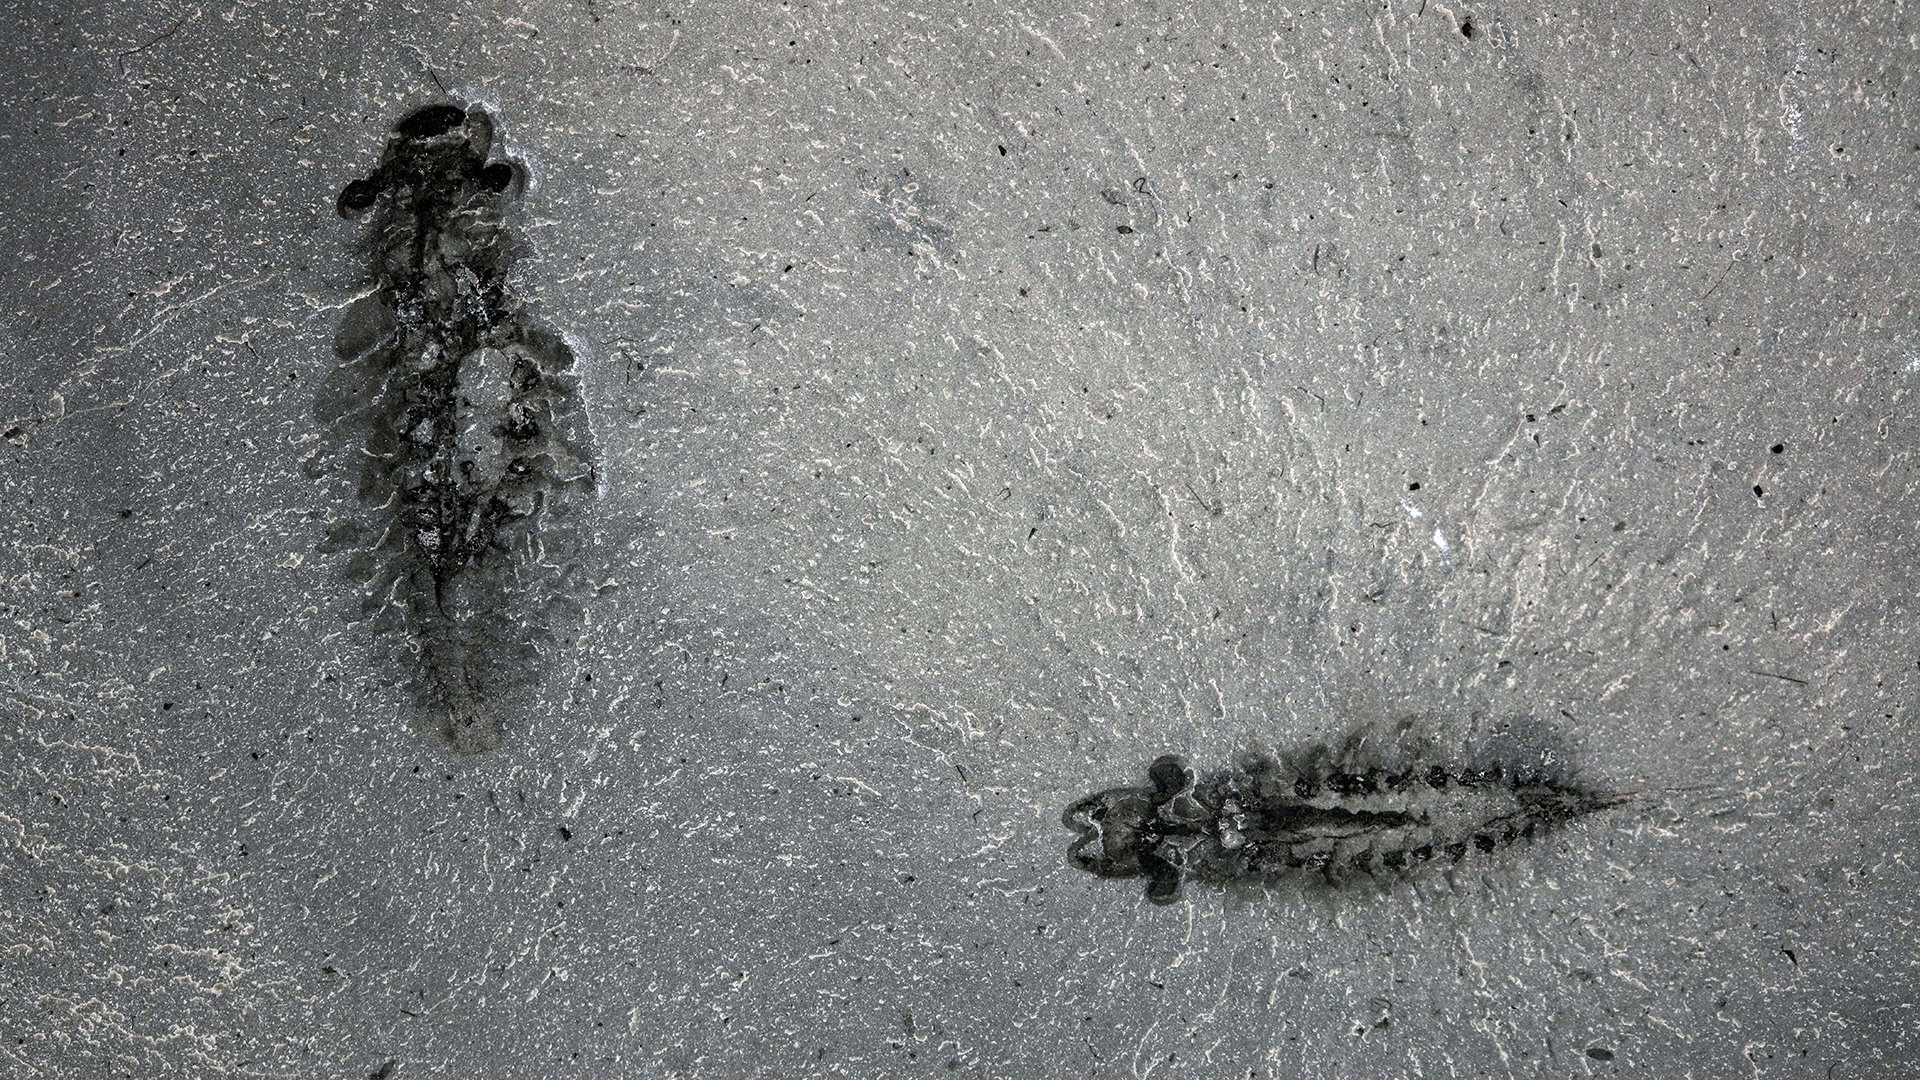 A pair of fossil specimens of Stanleycaris hirpex, specimen ROMIP 65674.1-2.